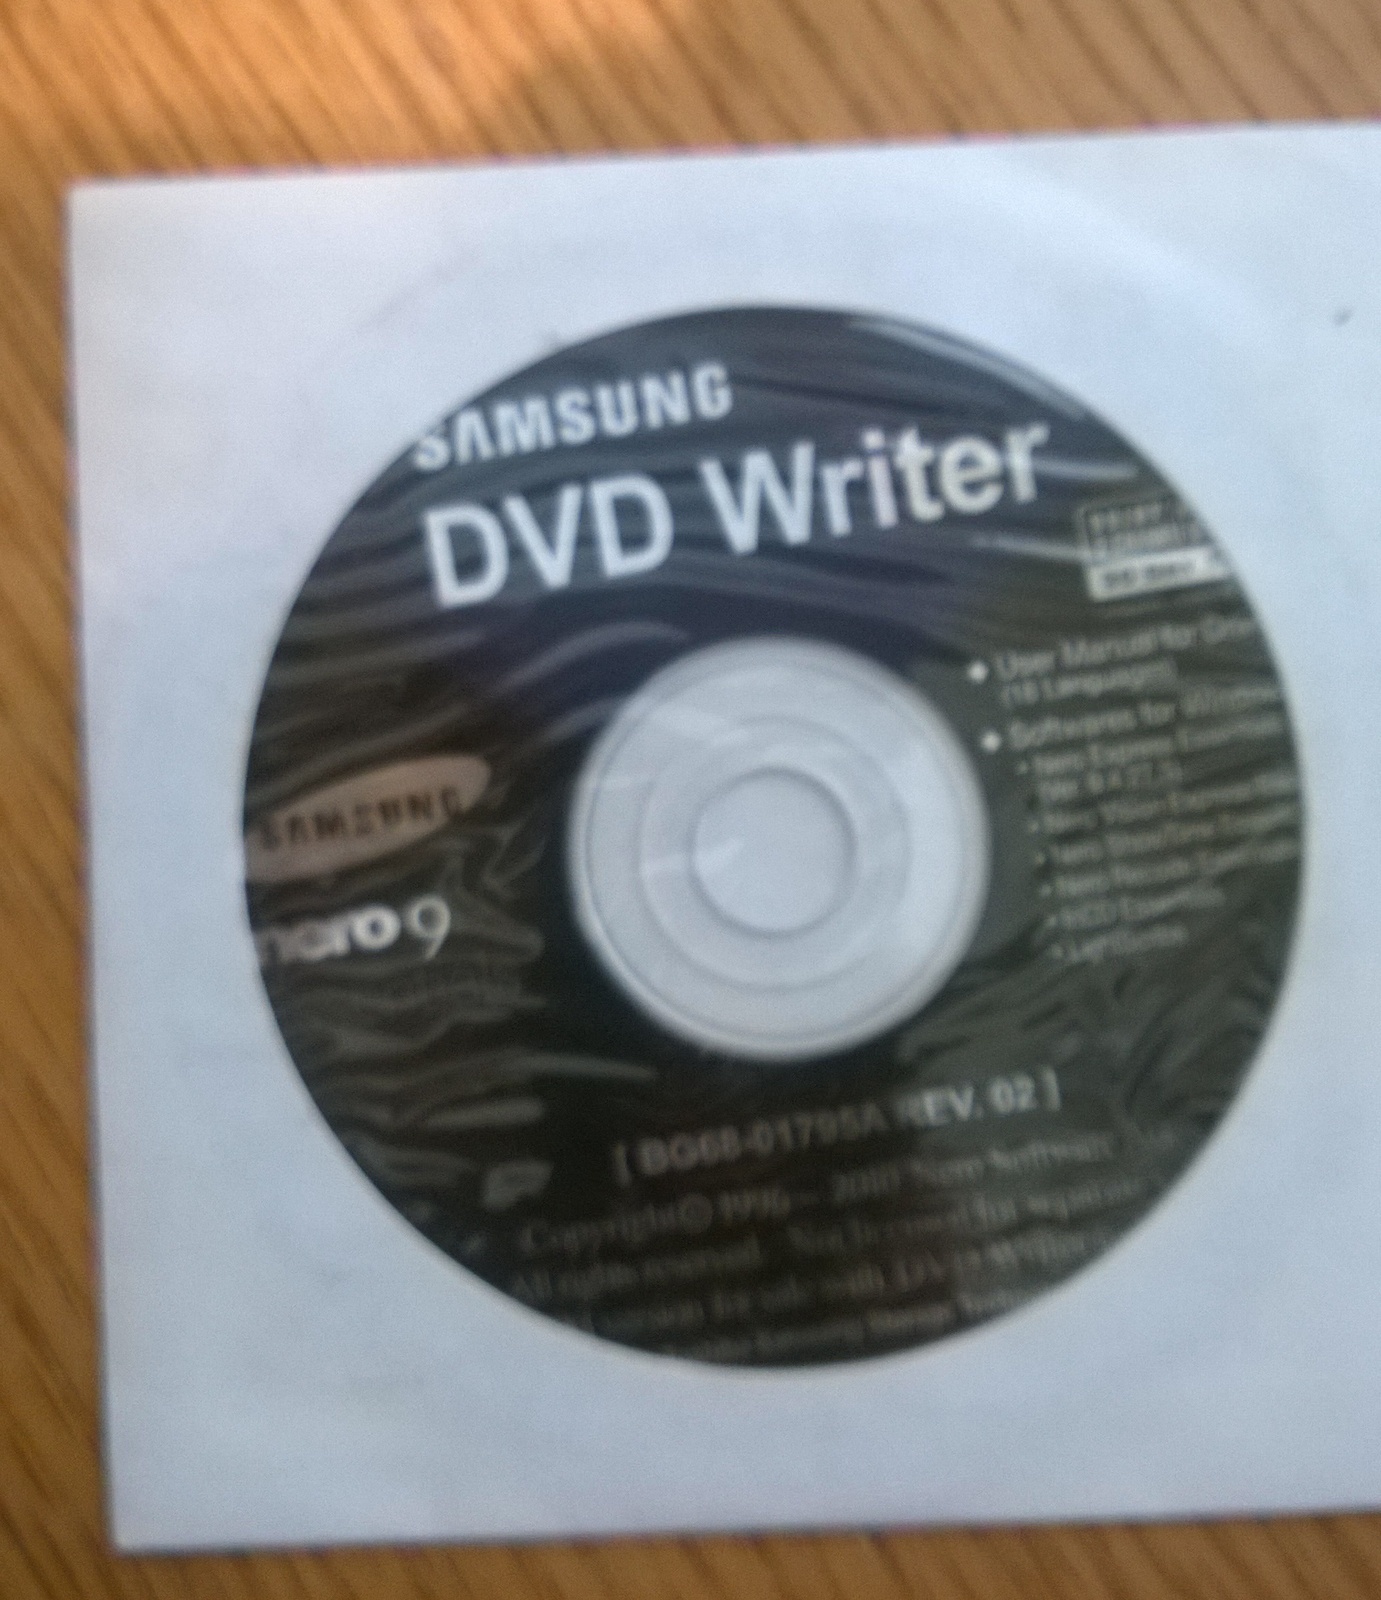 Samsung DVD Writer Nero 9 Essentials - $3.95